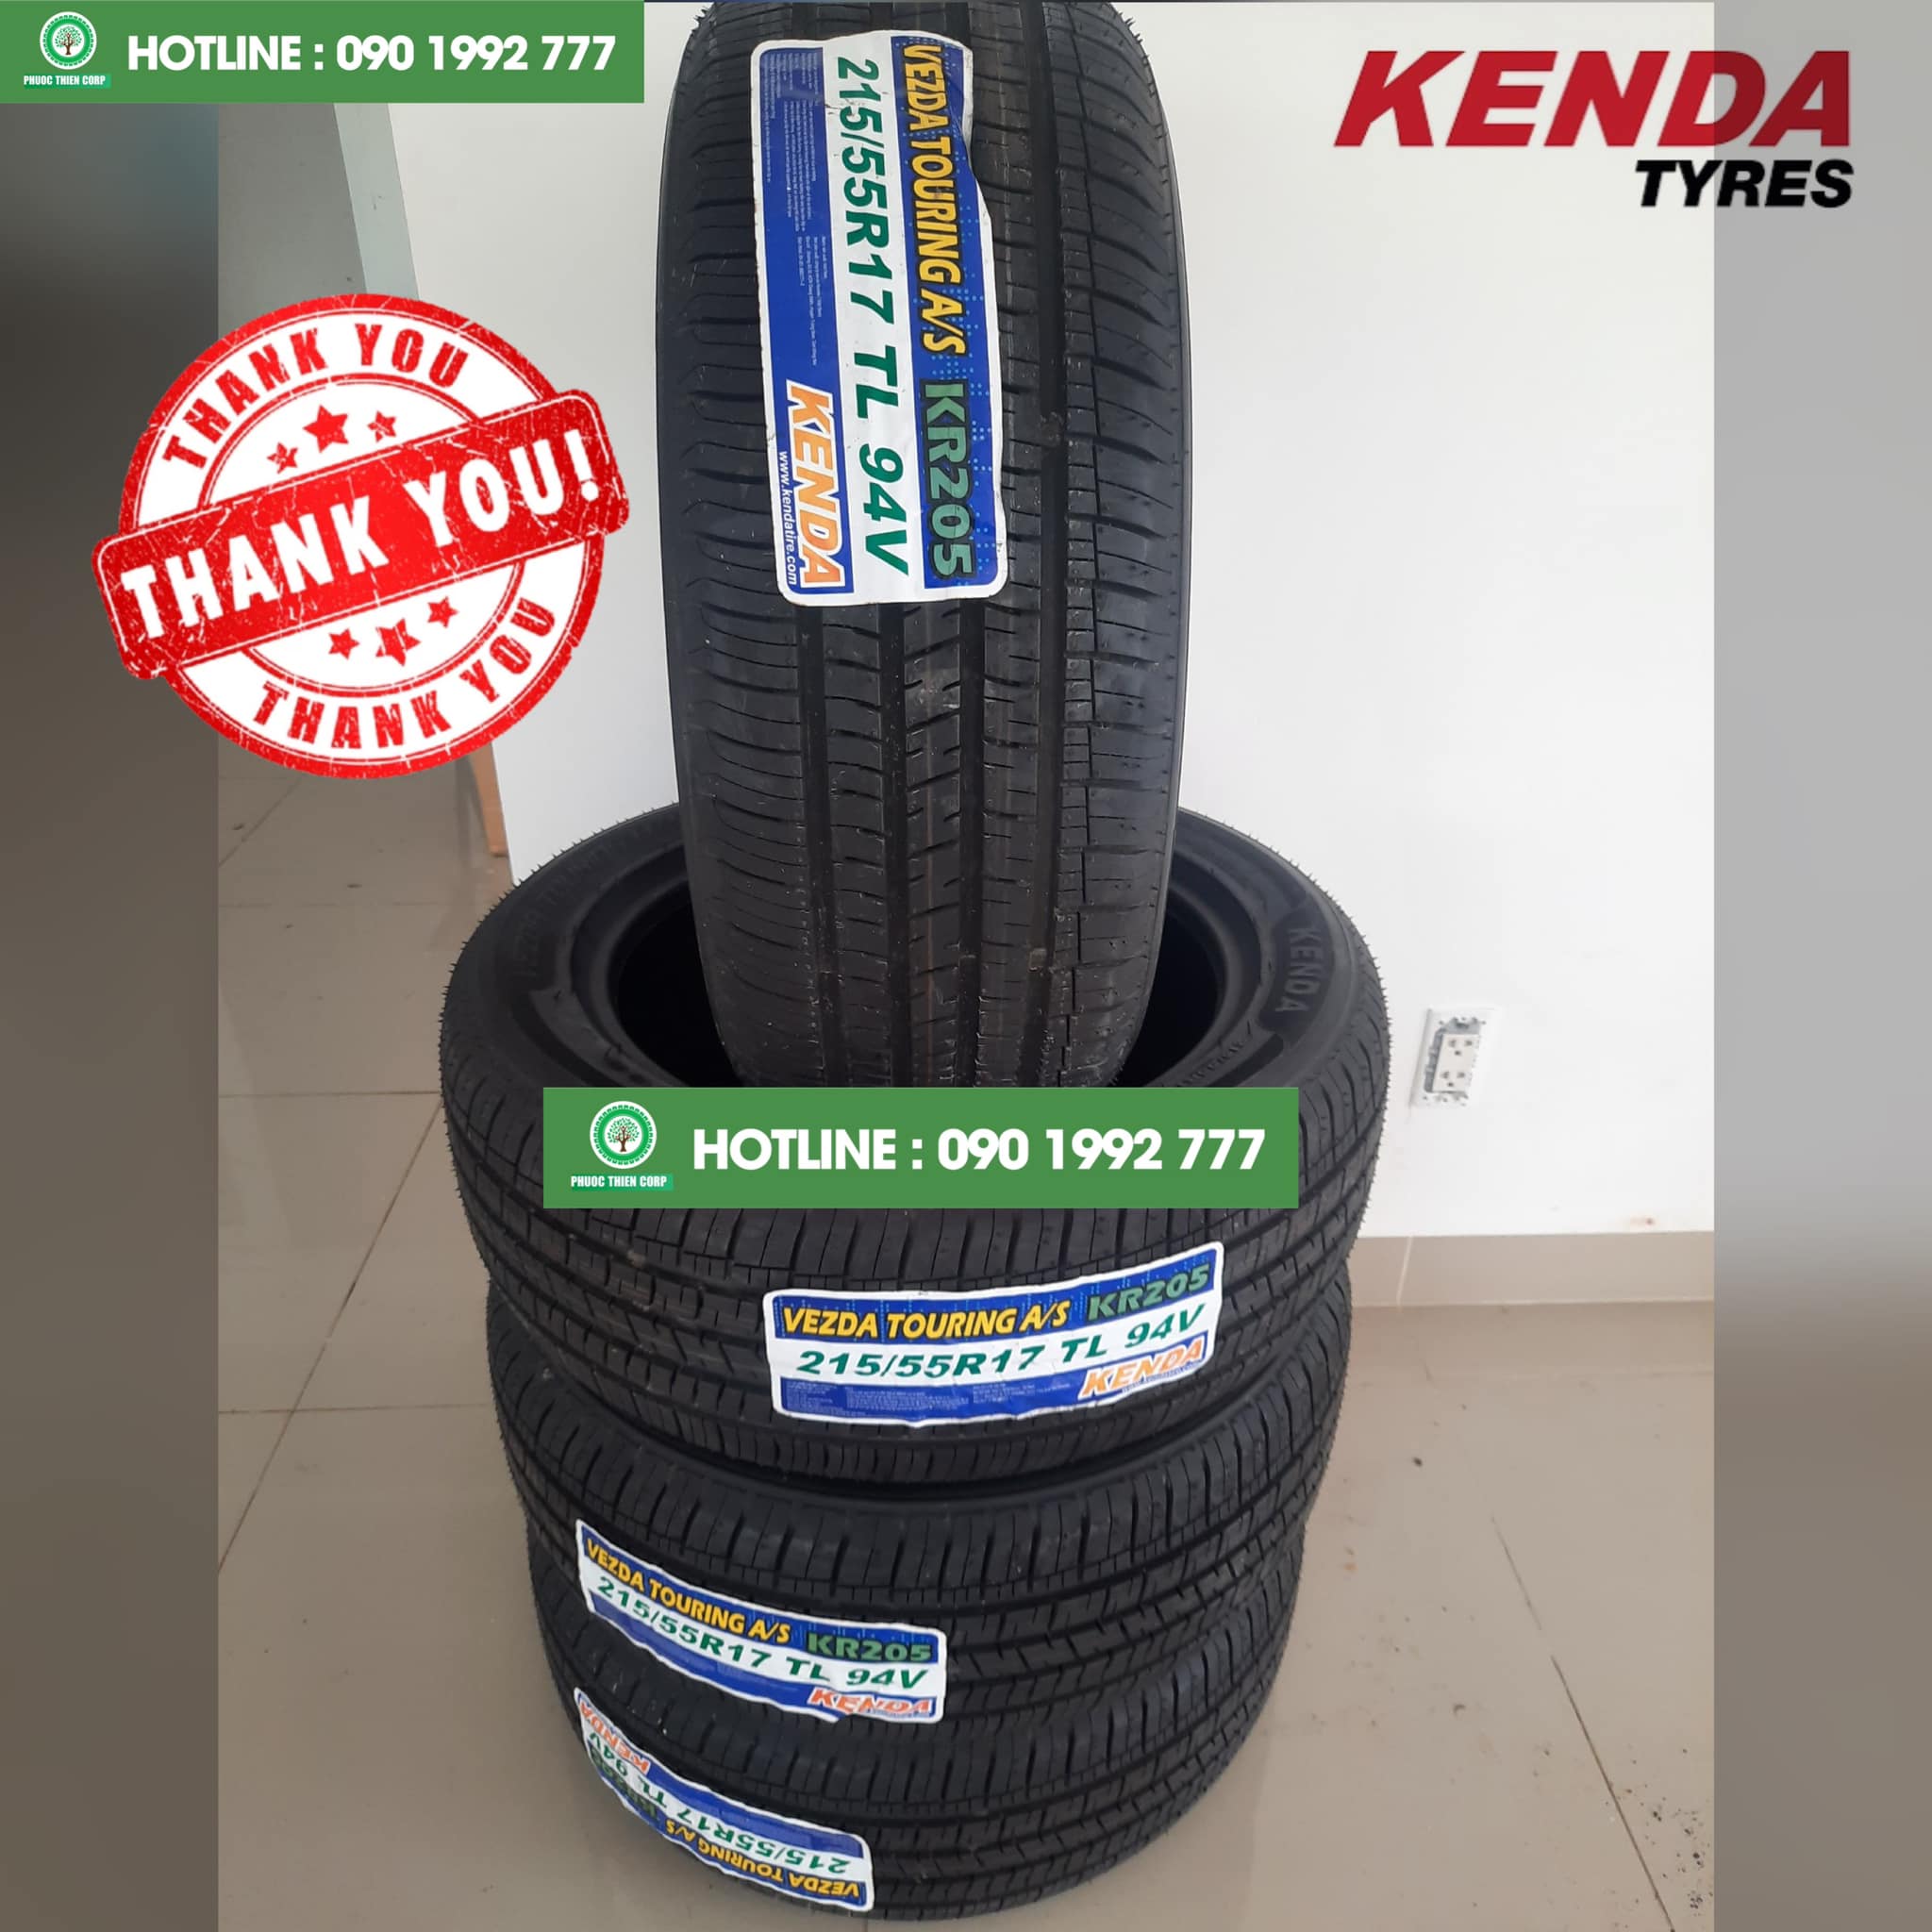 Gợi ý : Thay lốp KENDA cho xe Honda HRV